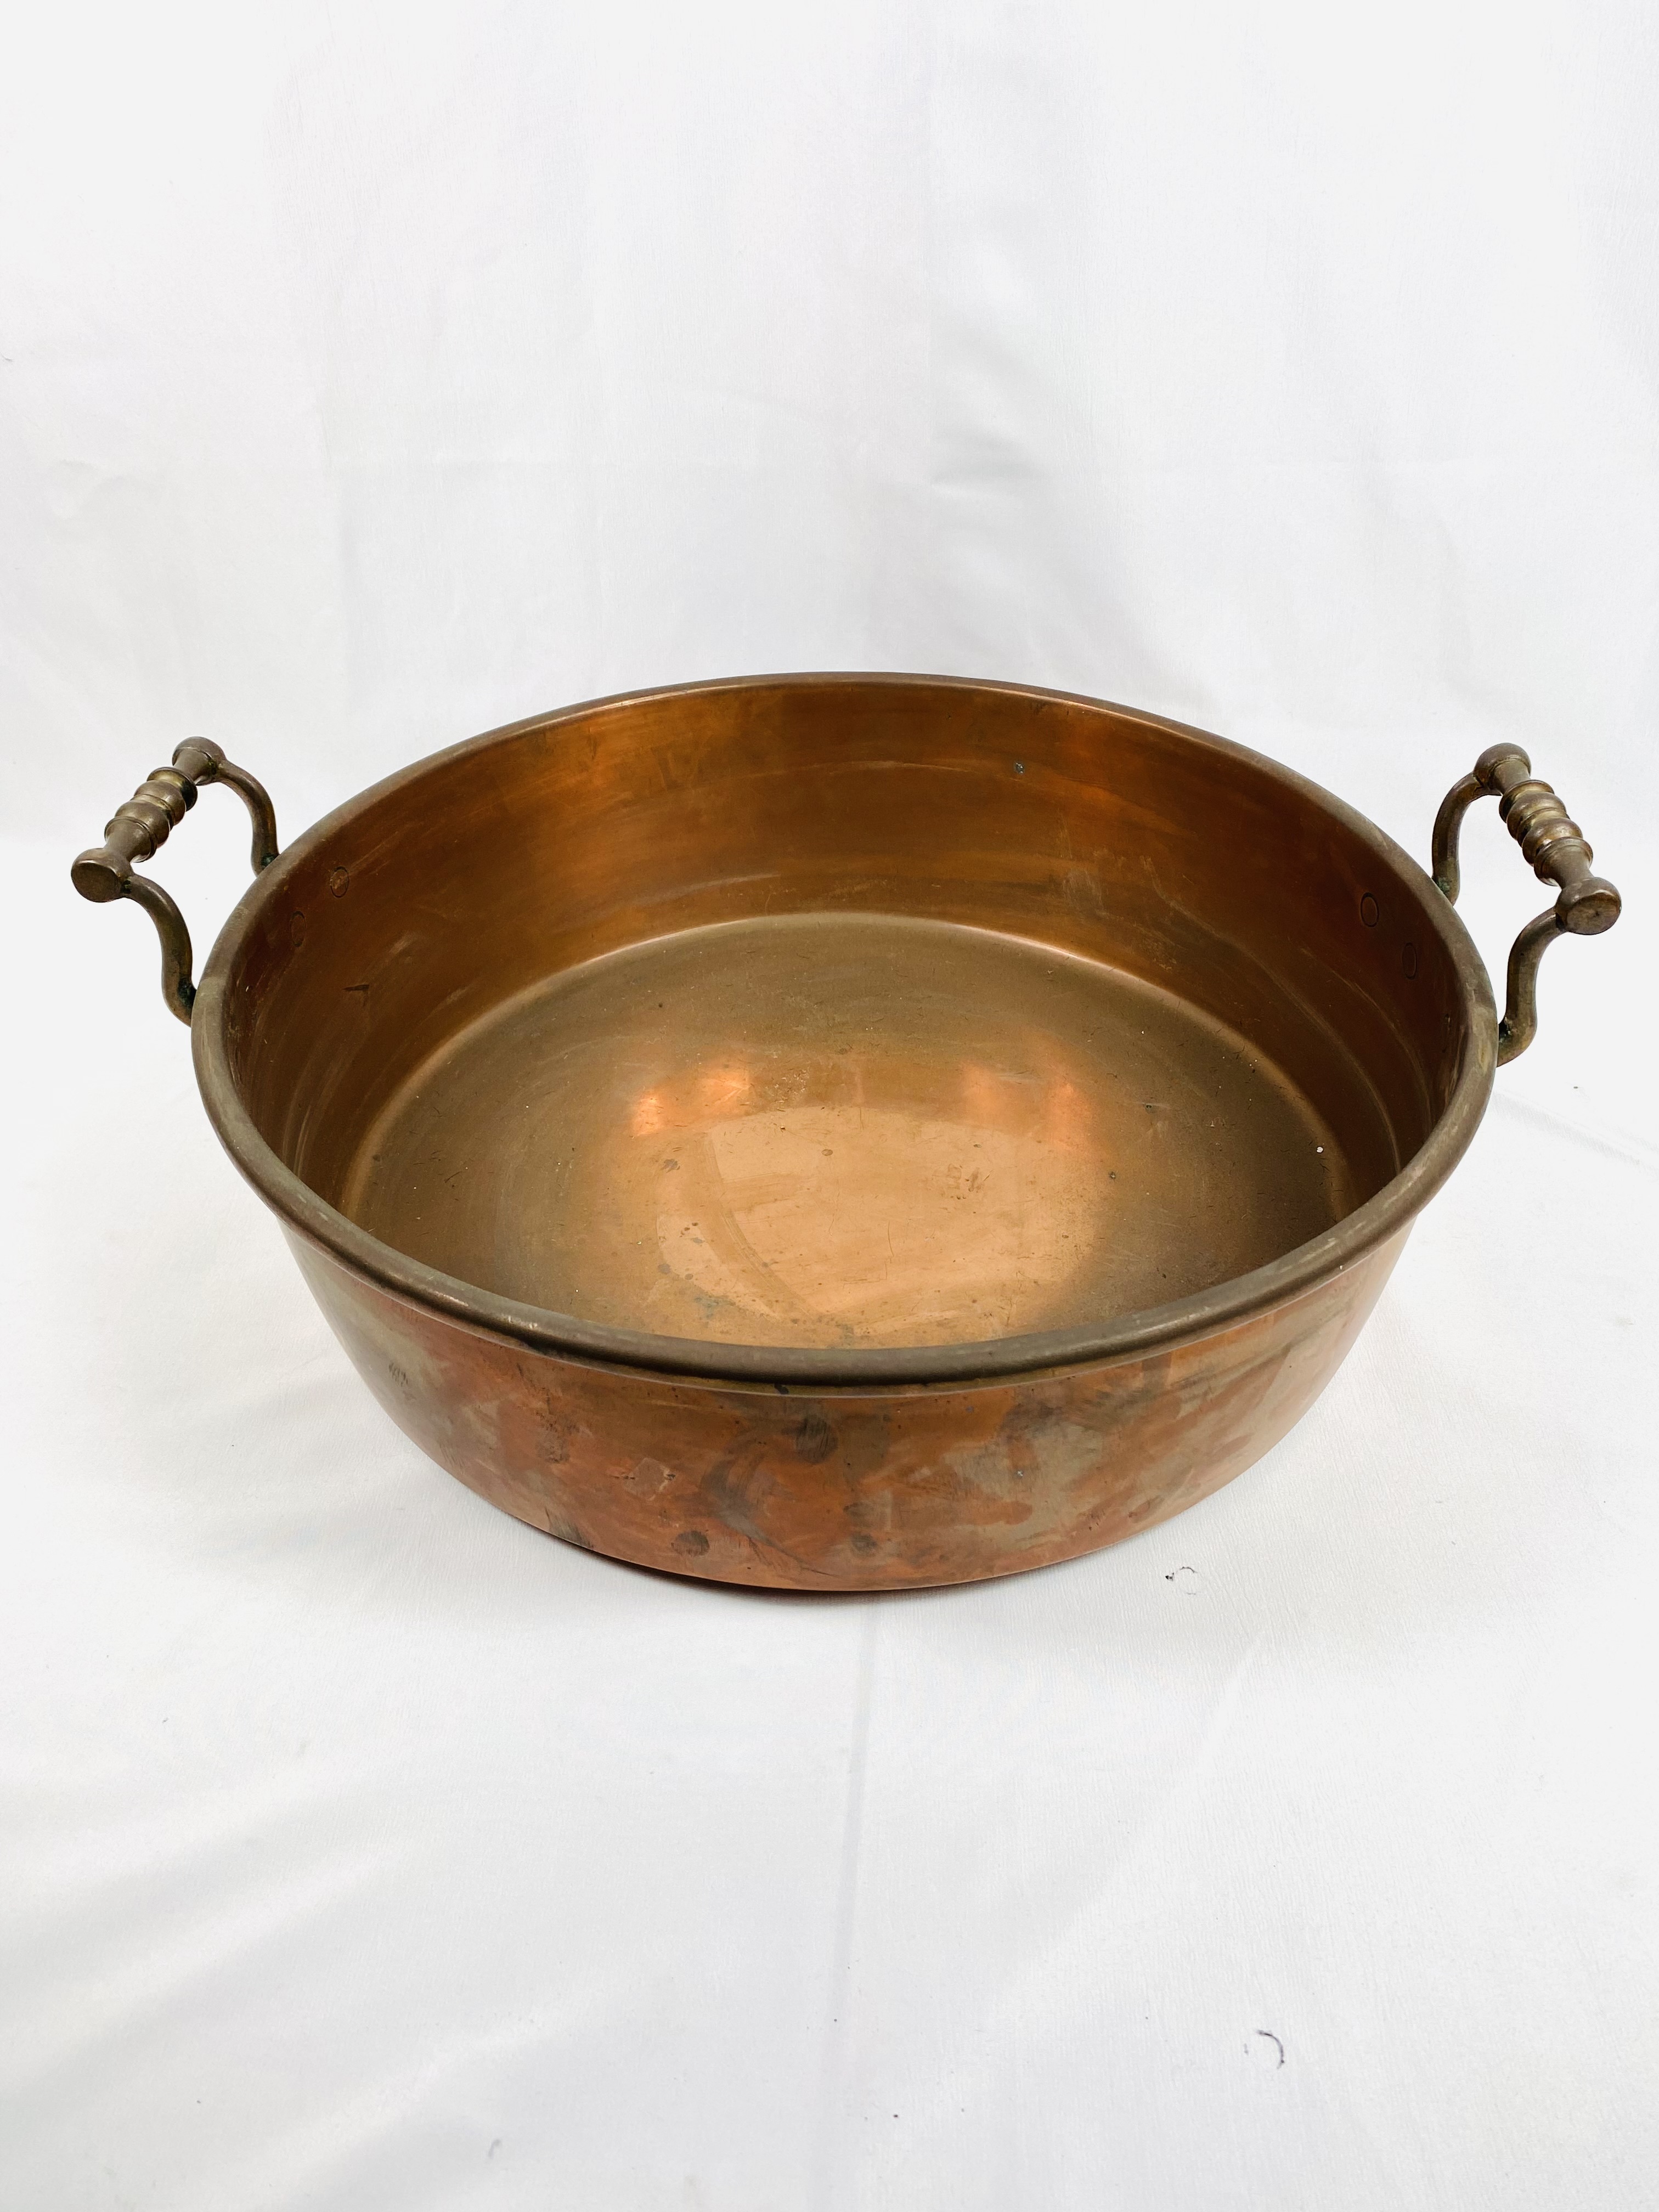 Copper jam pan - Image 3 of 3